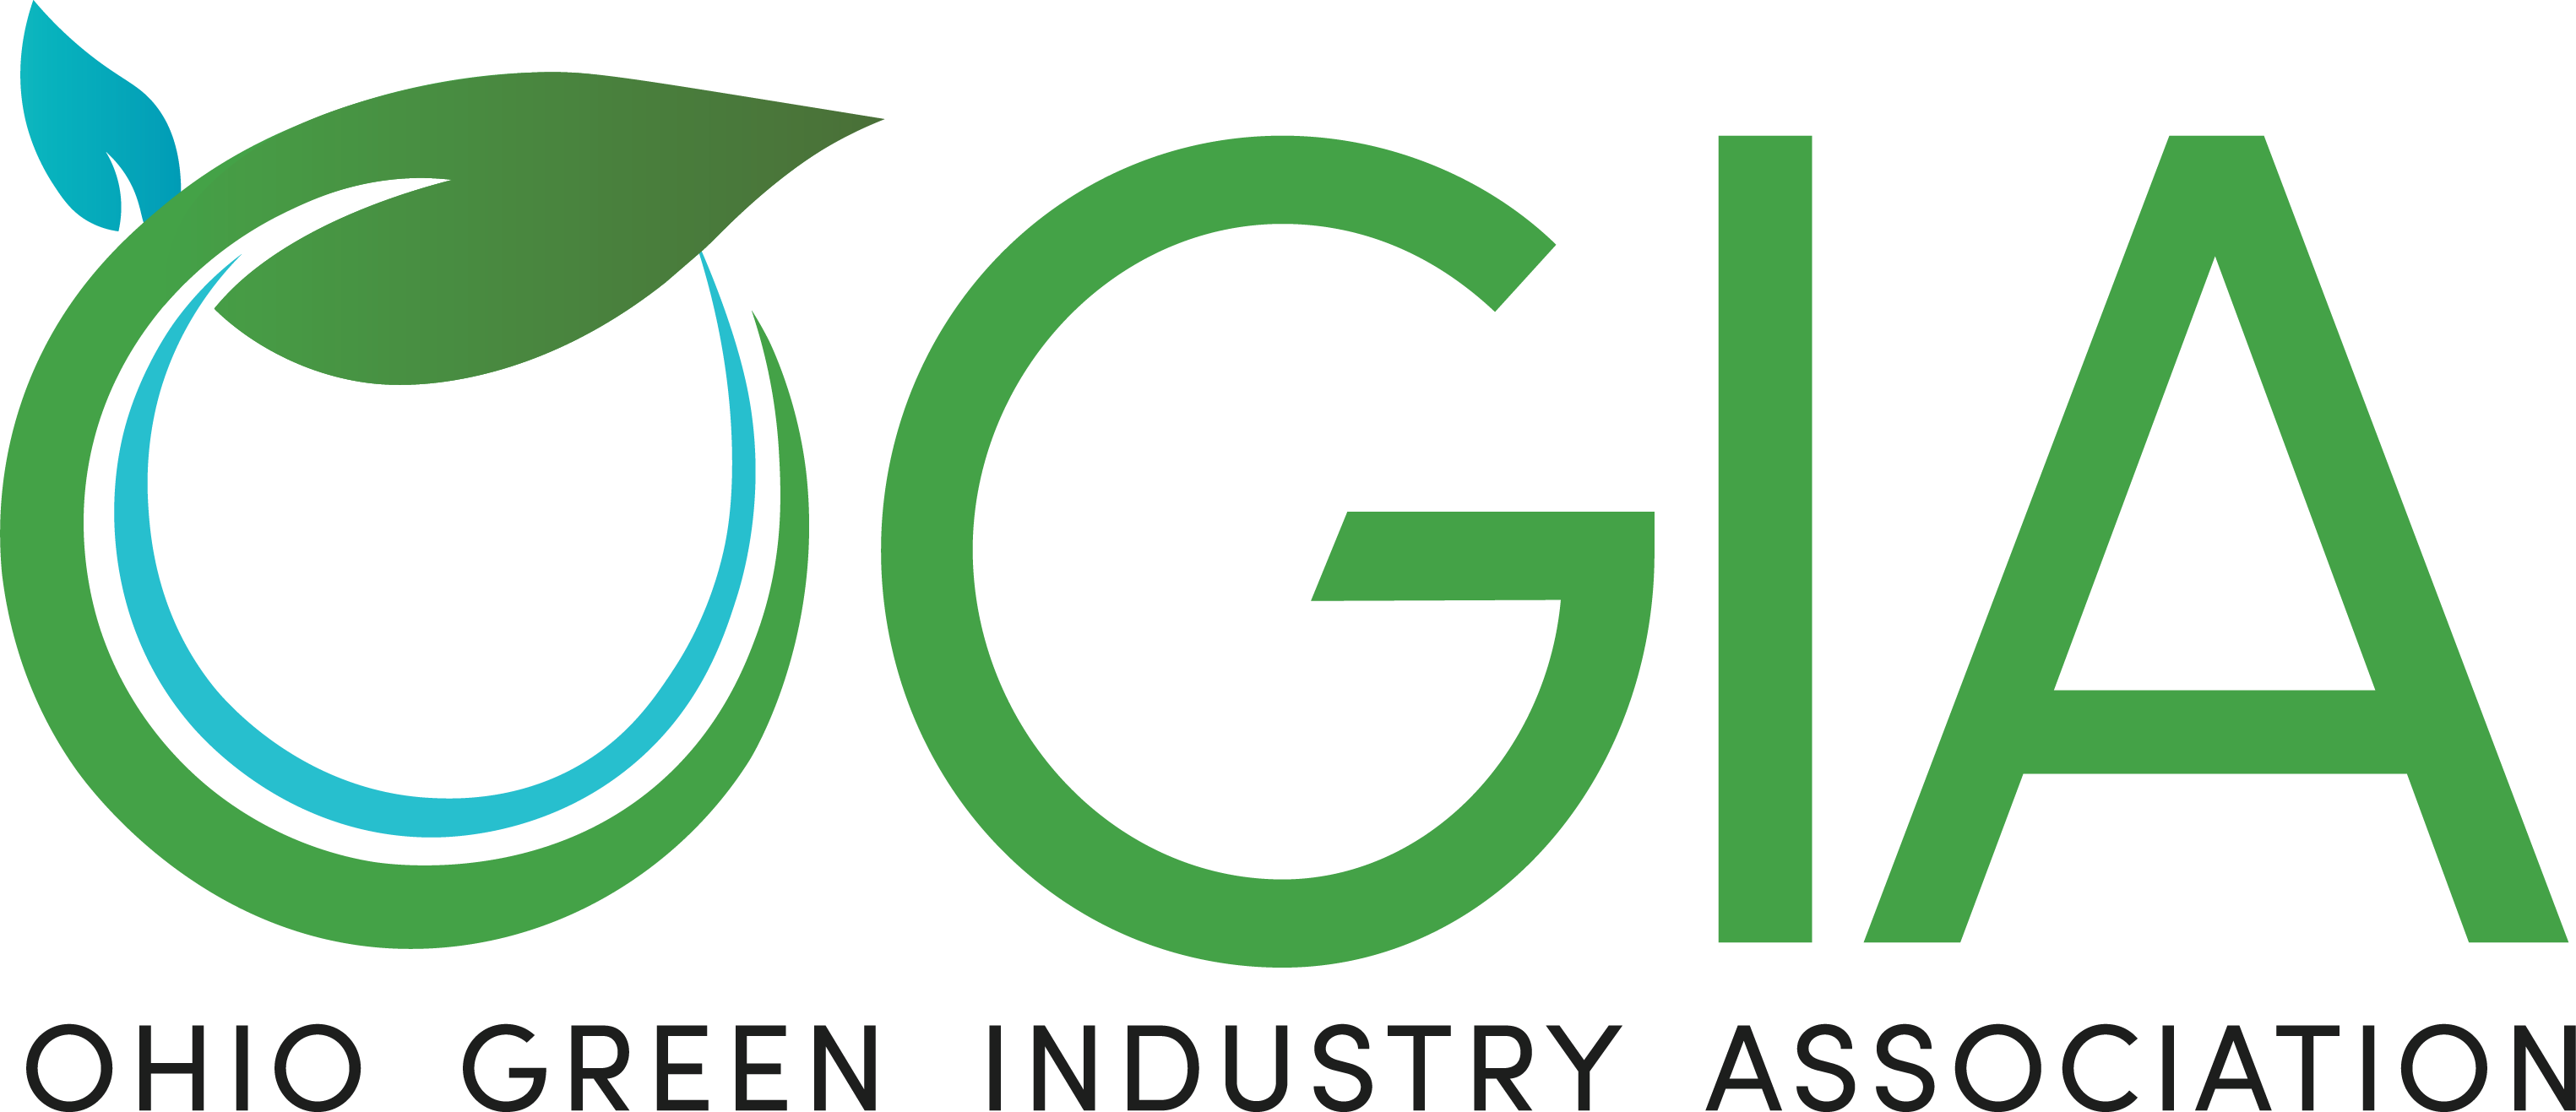 OGIA logo